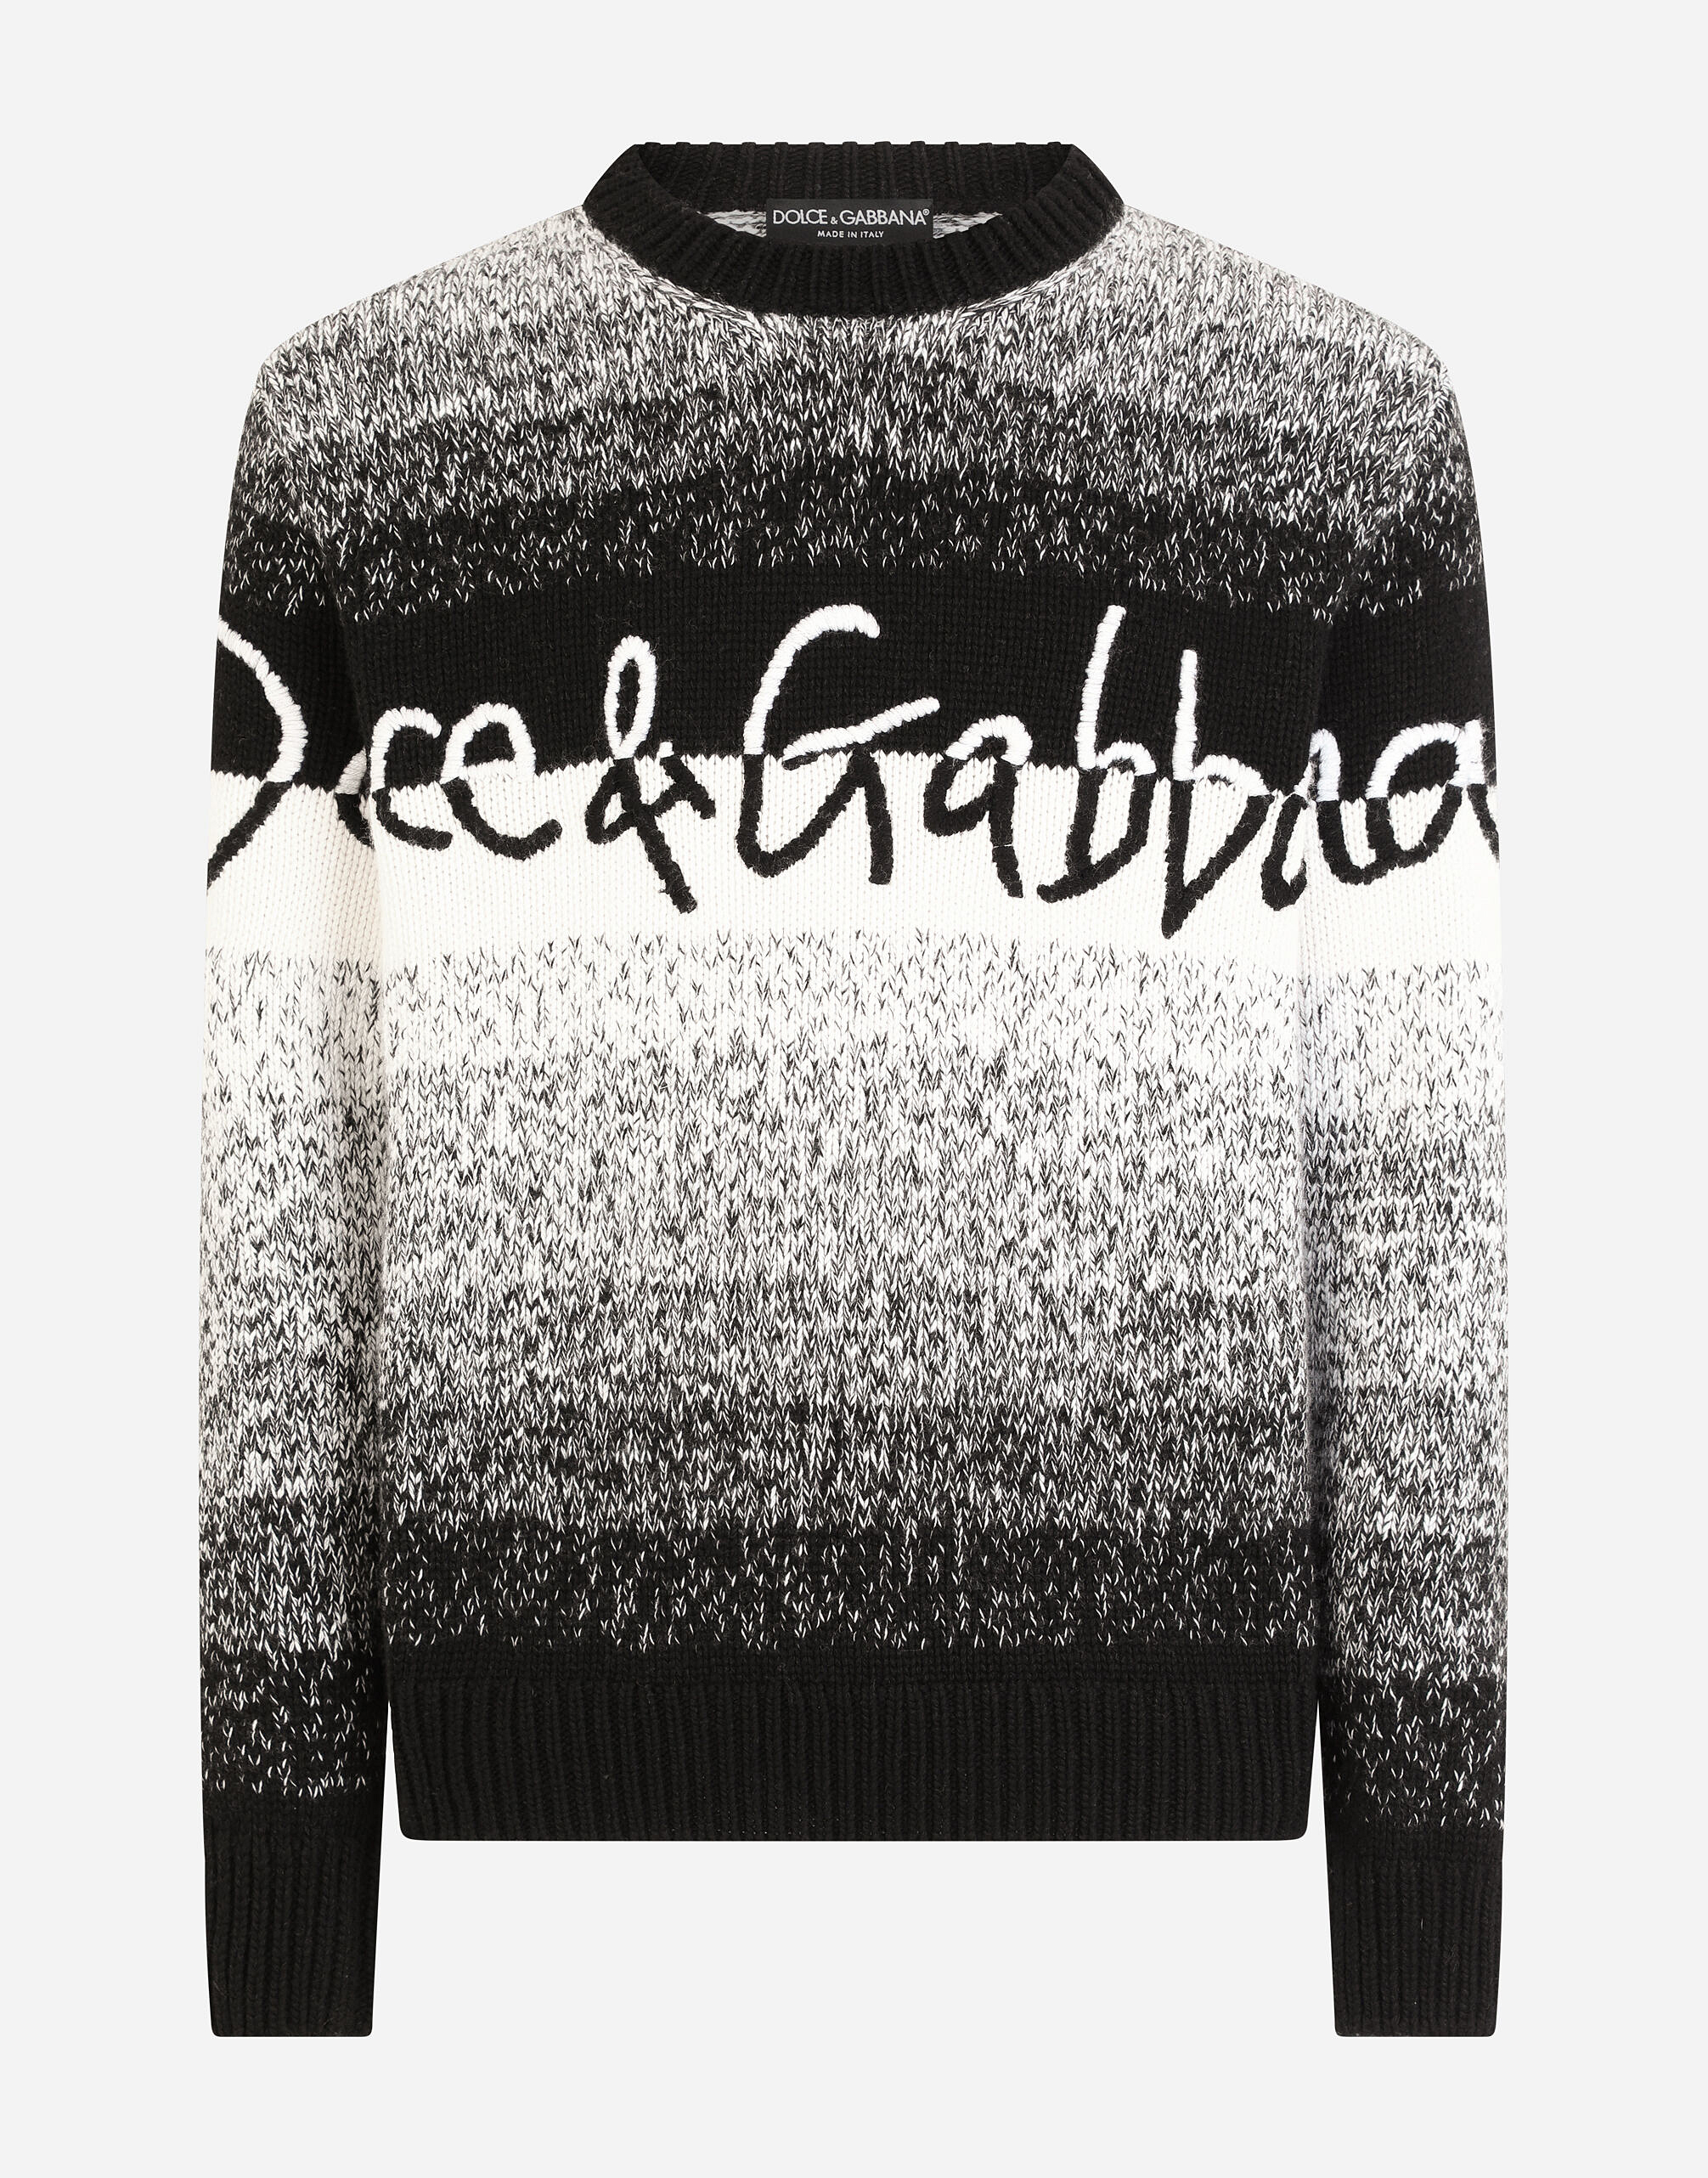 Dolce Gabbana エンブロイダリー ウールクルーネックセーター 2021 